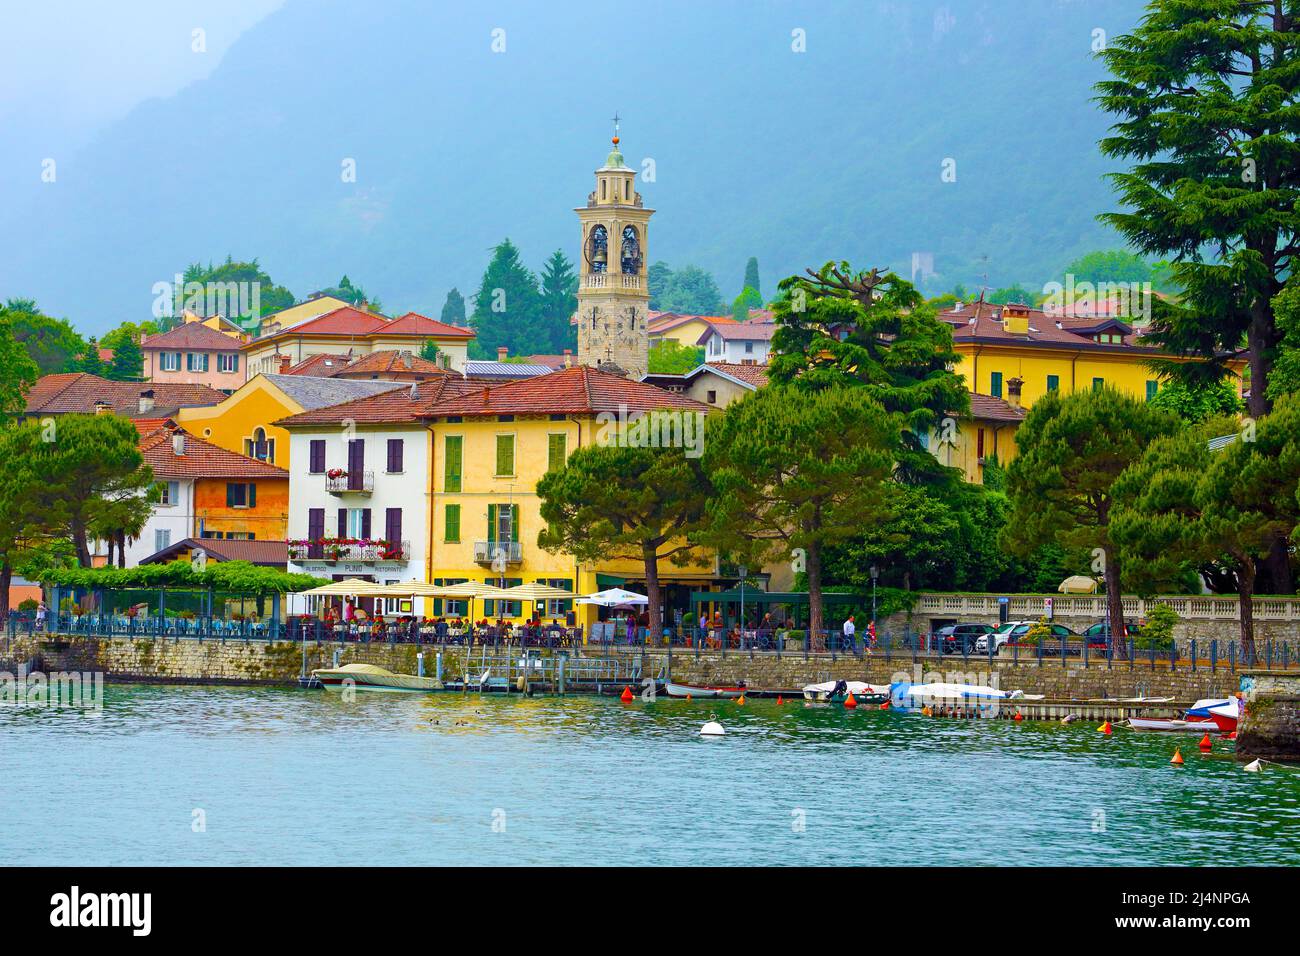 Lenno sulle rive del lago di Como in Italia settentrionale Foto Stock